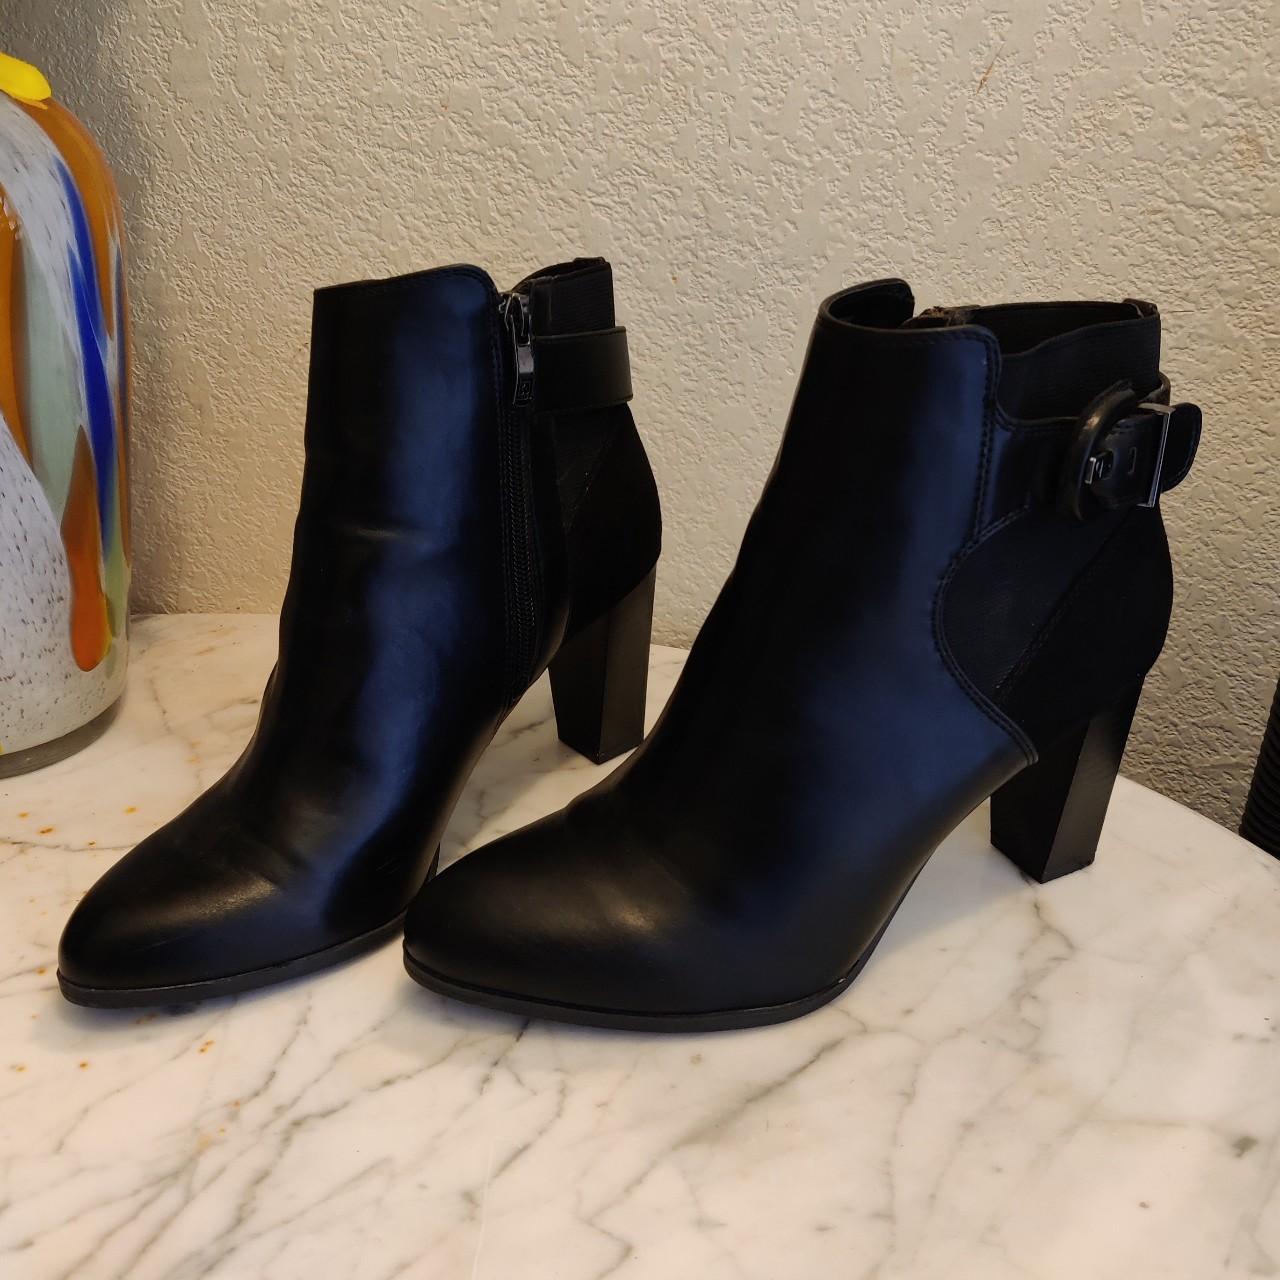 Liz Claiborne Women's Black Boots | Depop